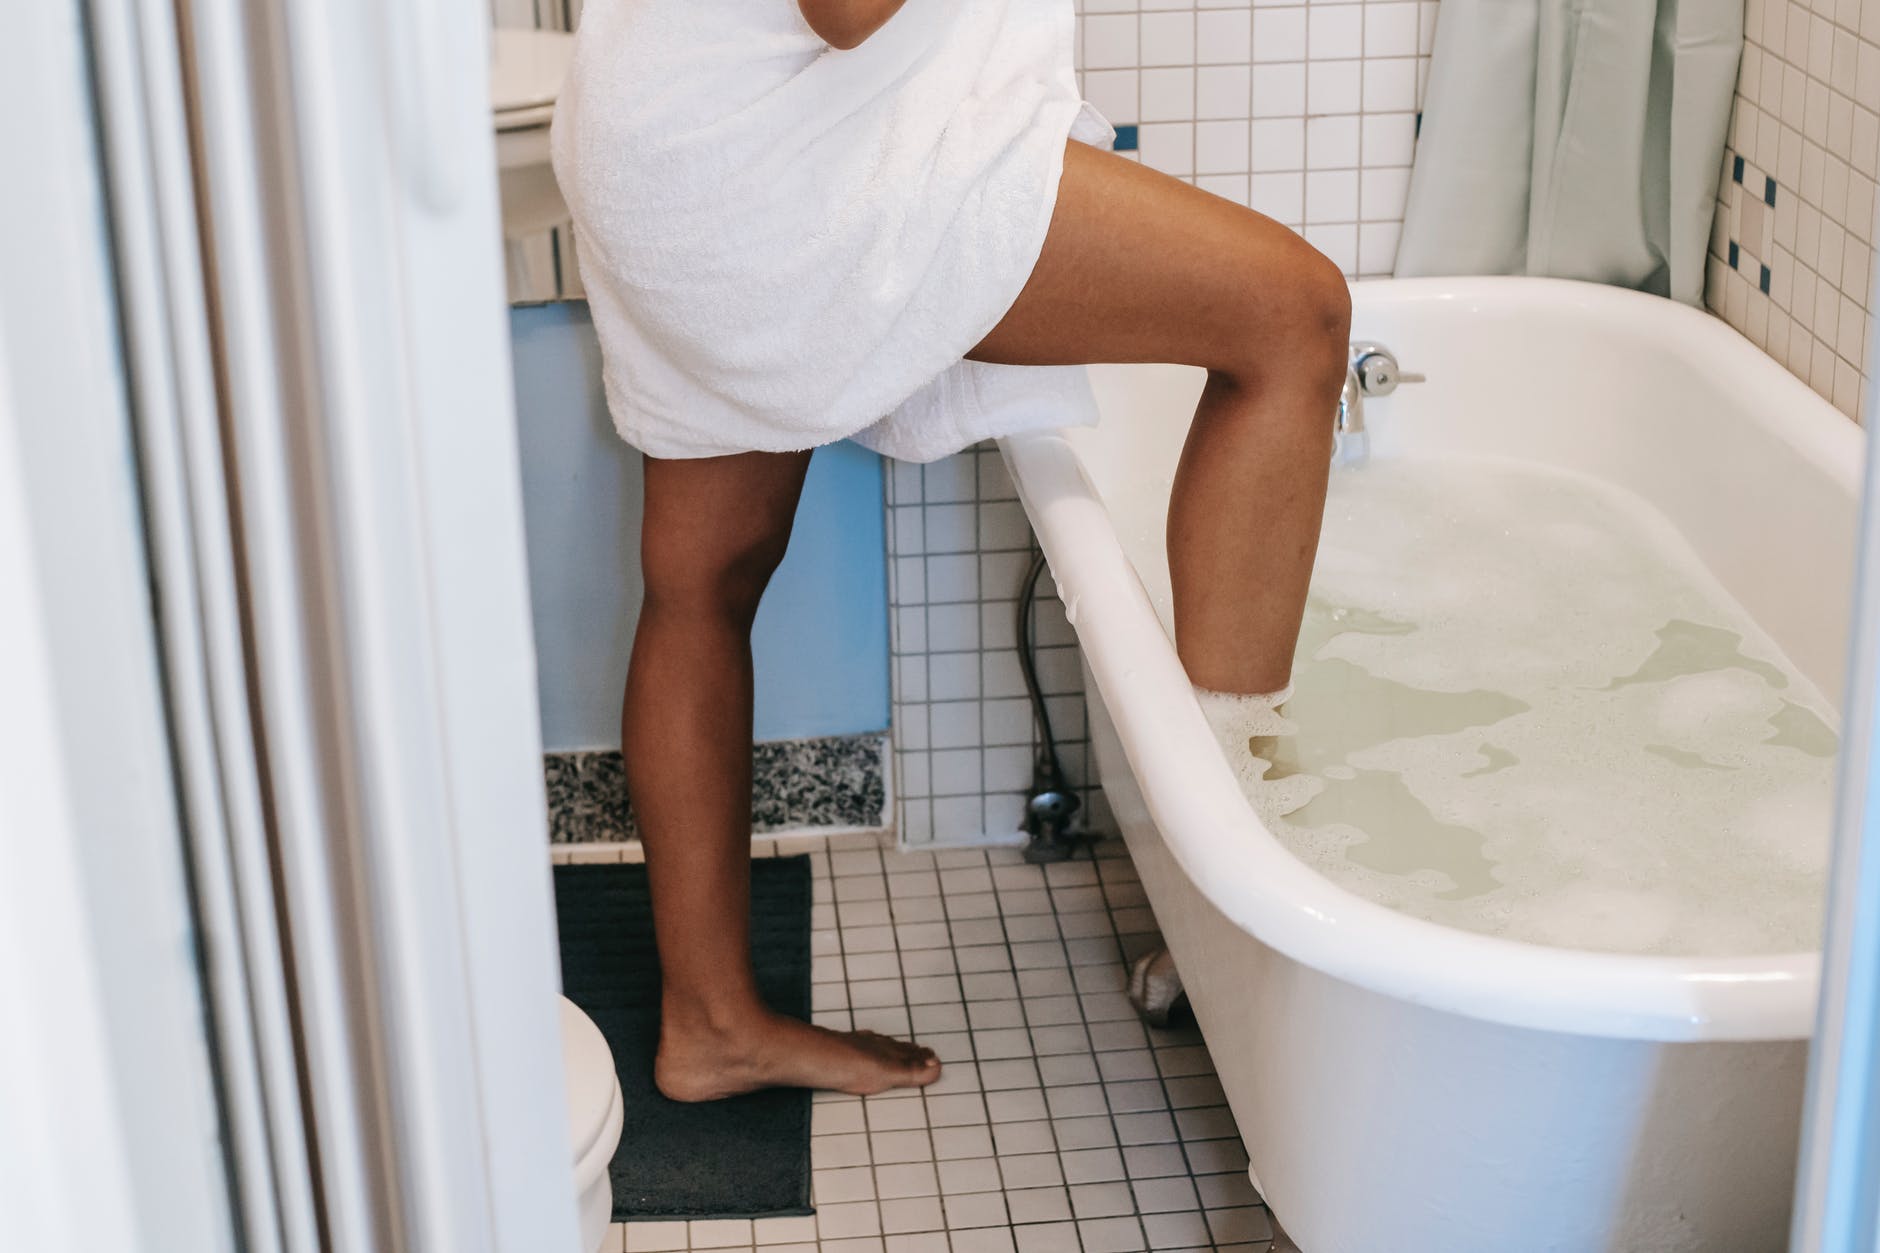 ethnic woman putting leg in bath in morning